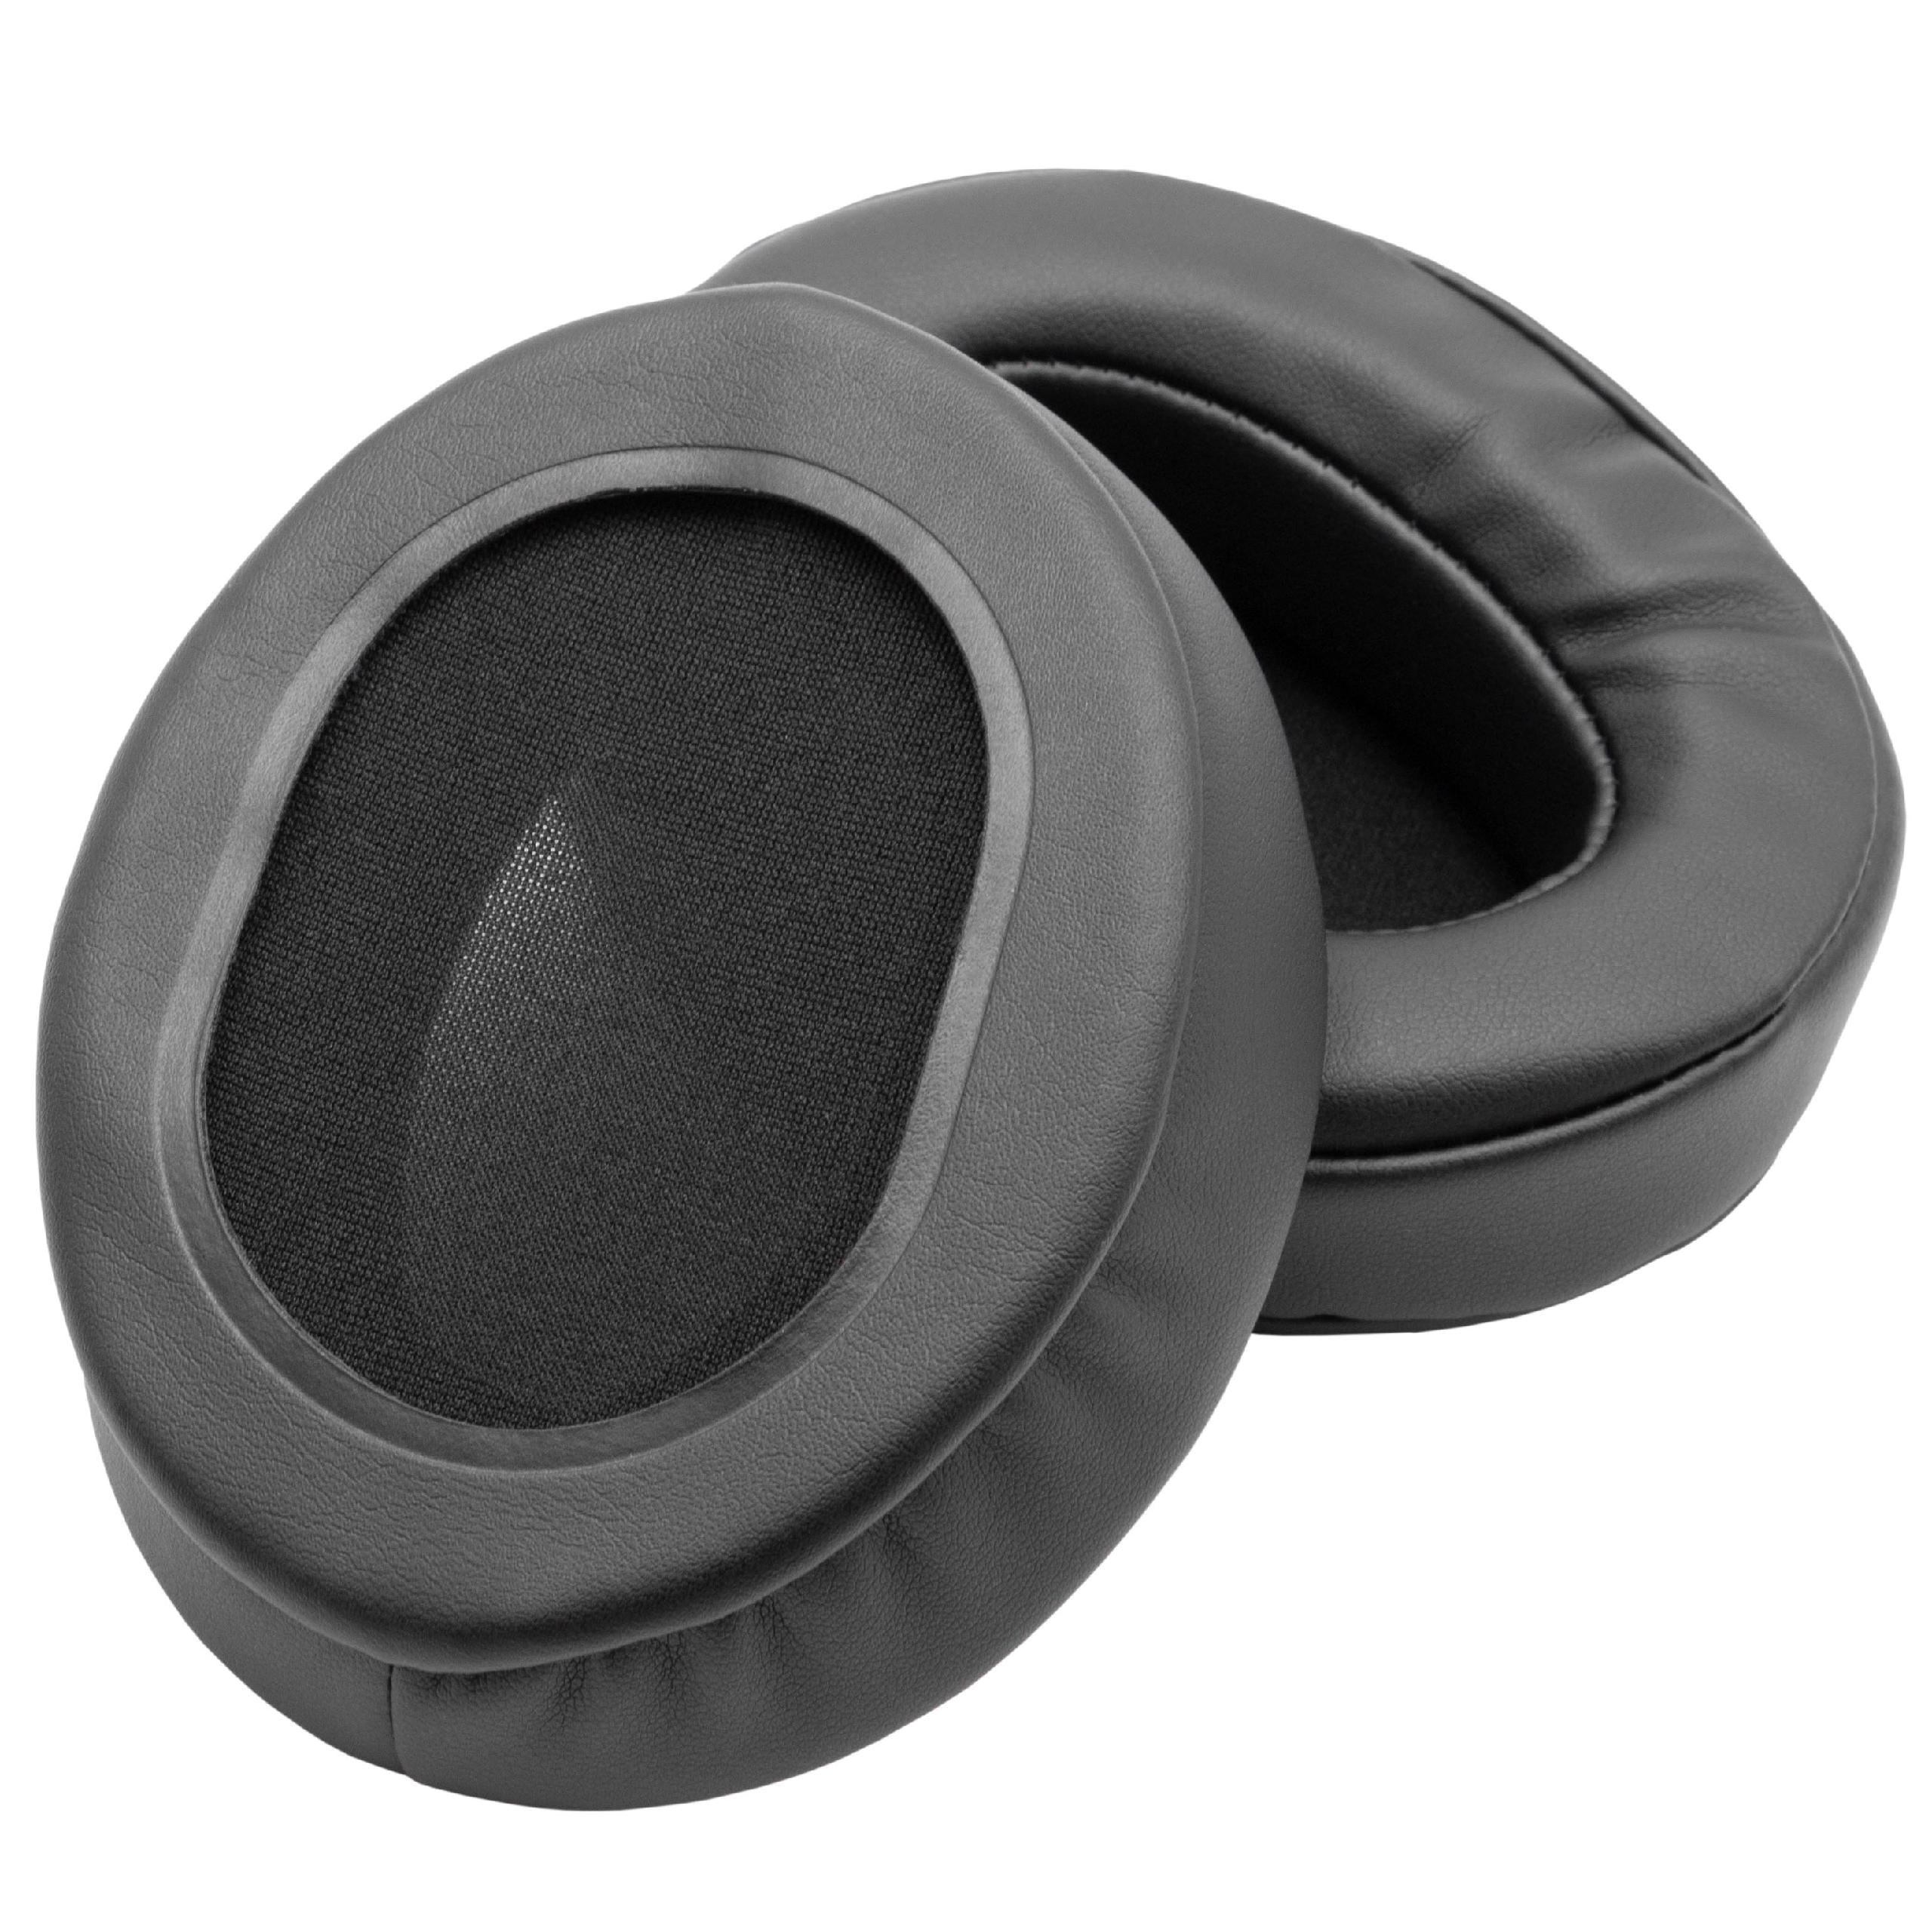 Coussinets d'oreille pour casque Roland / Brainwavz RH-300 et autres - polyuréthane / mousse noir